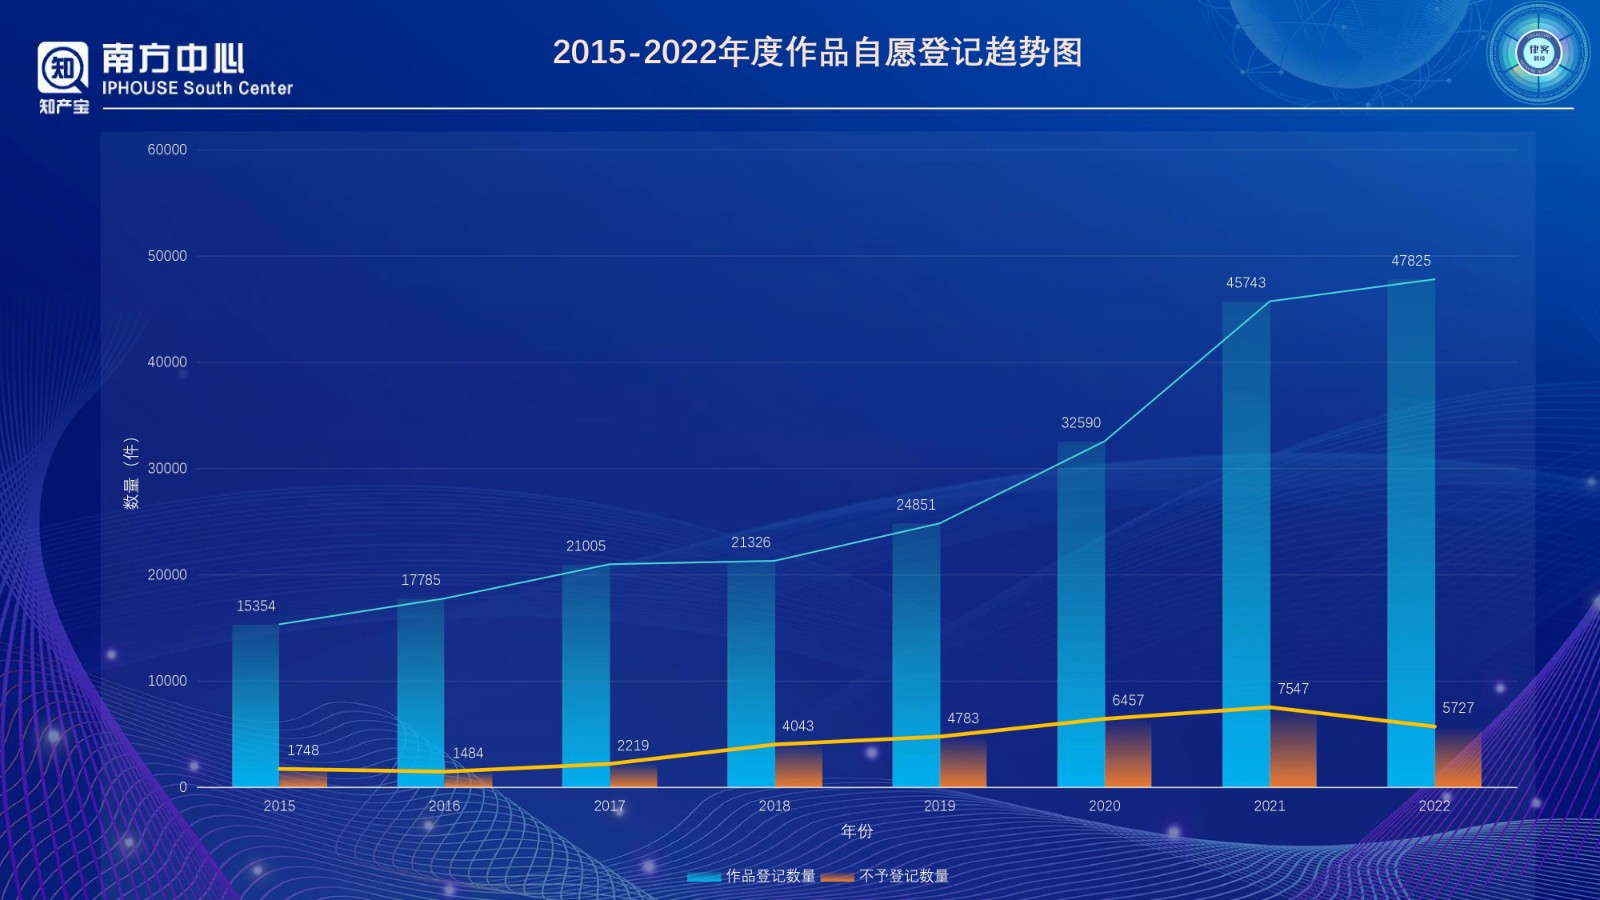 浙江省版权登记数据分析报告（2022年度）PPT-0410改_page-0002.jpg